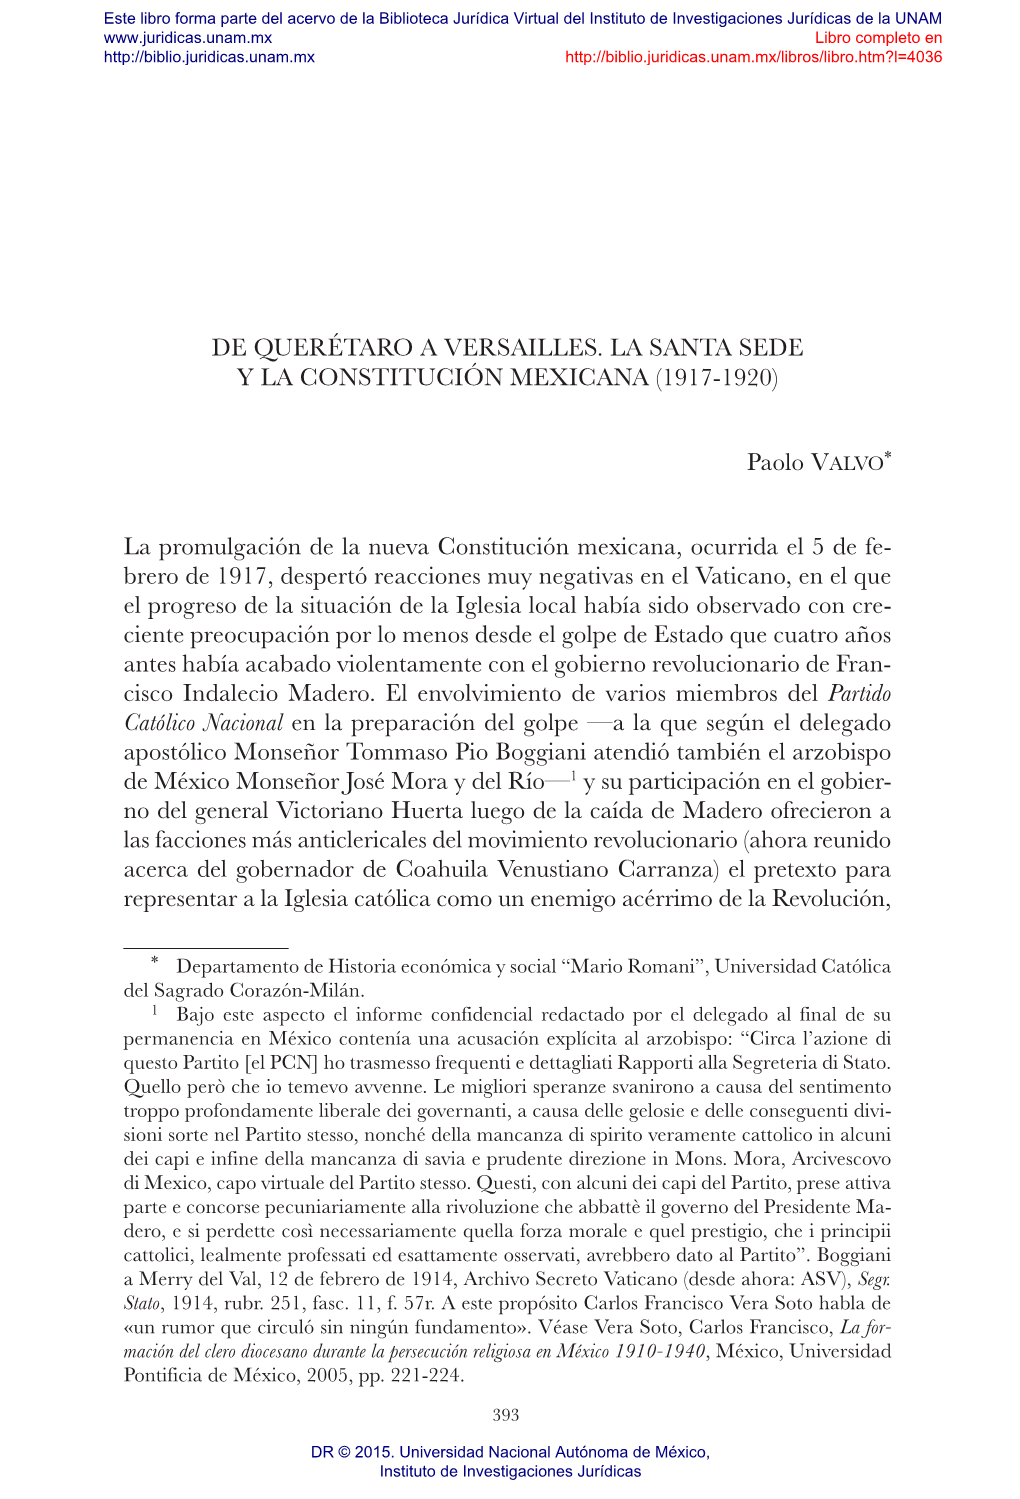 De Querétaro a Versailles. La Santa Sede Y La Constitución Mexicana (1917-1920)